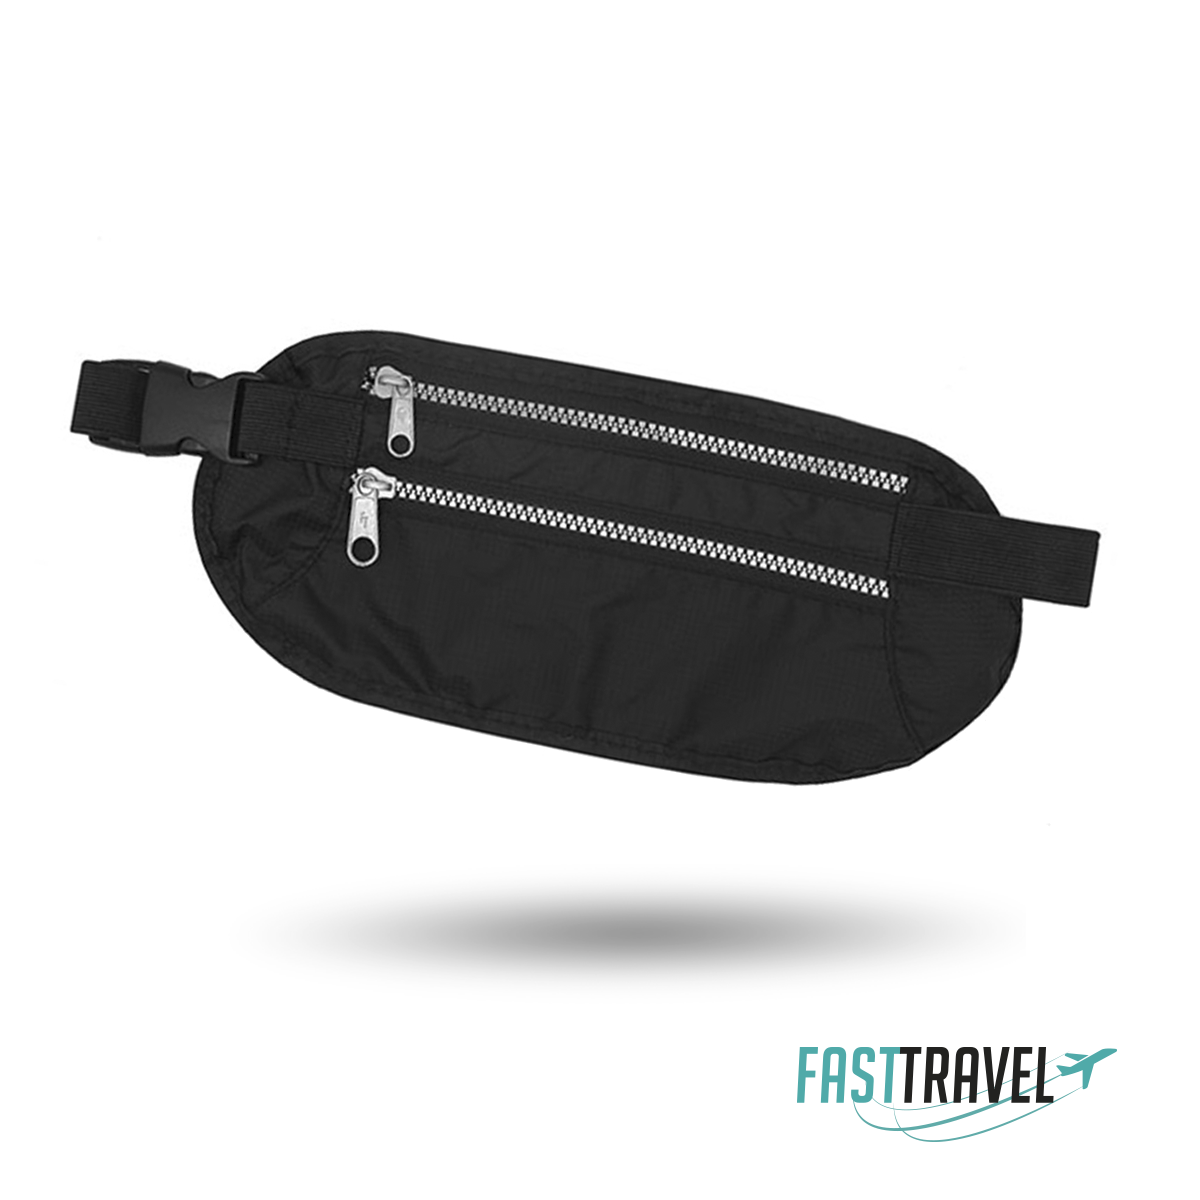 FT Waist BAG - Fast Travel | LOGO GRATIS !